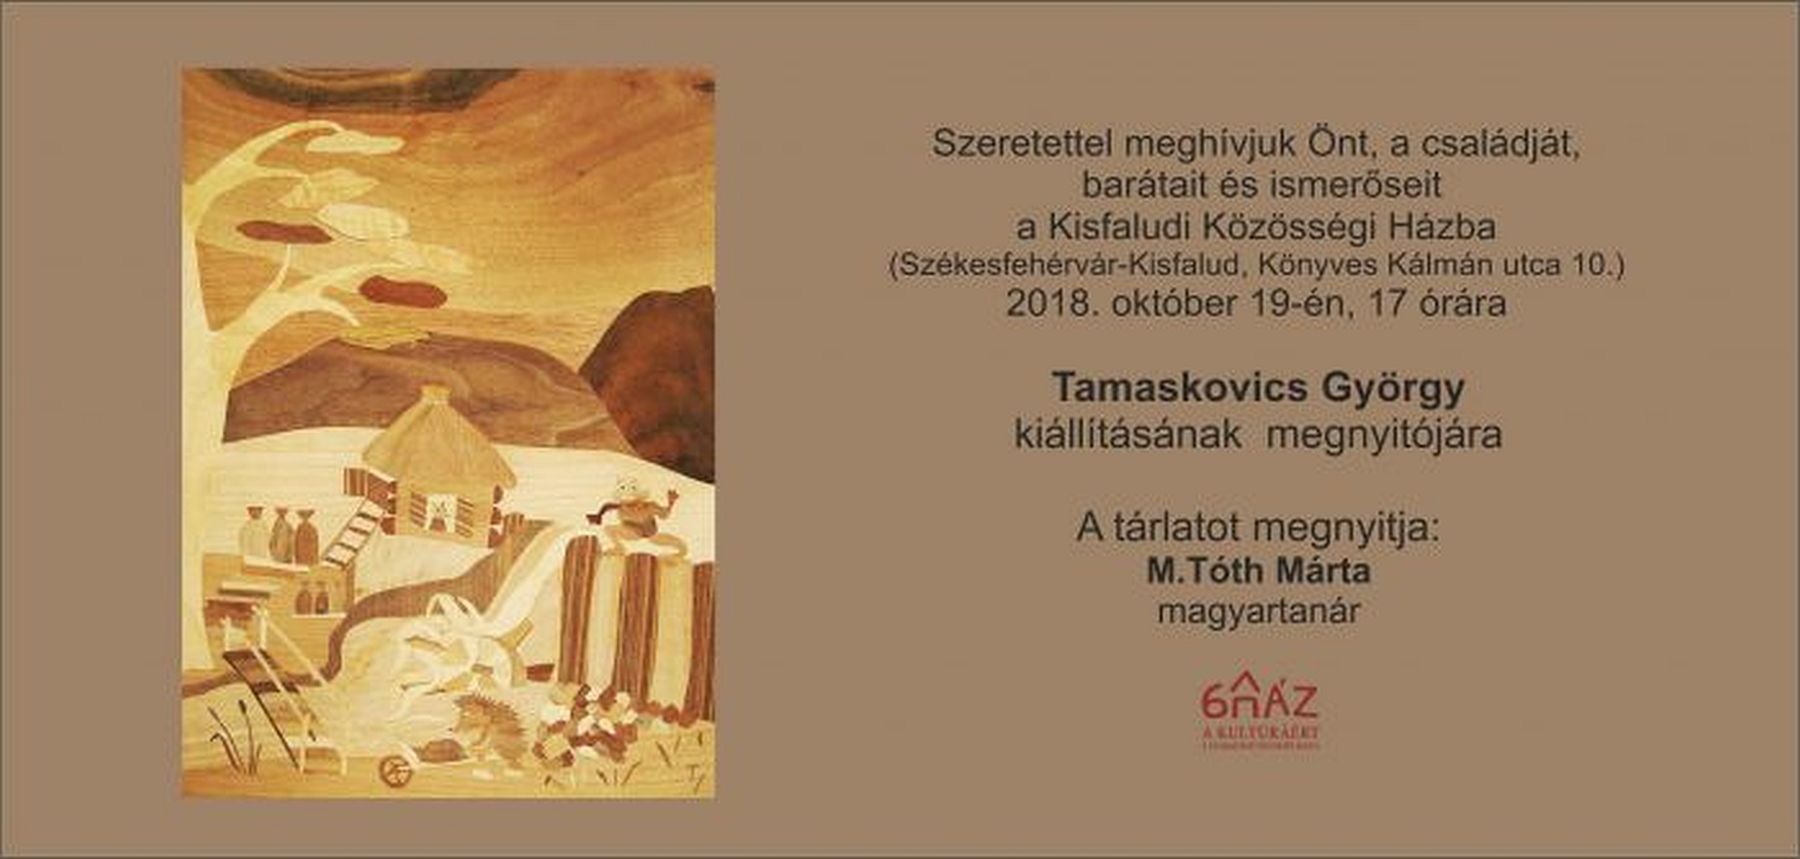 Tamaskovics György, faintarzia-művész kiállítása nyílik Kisfaludon